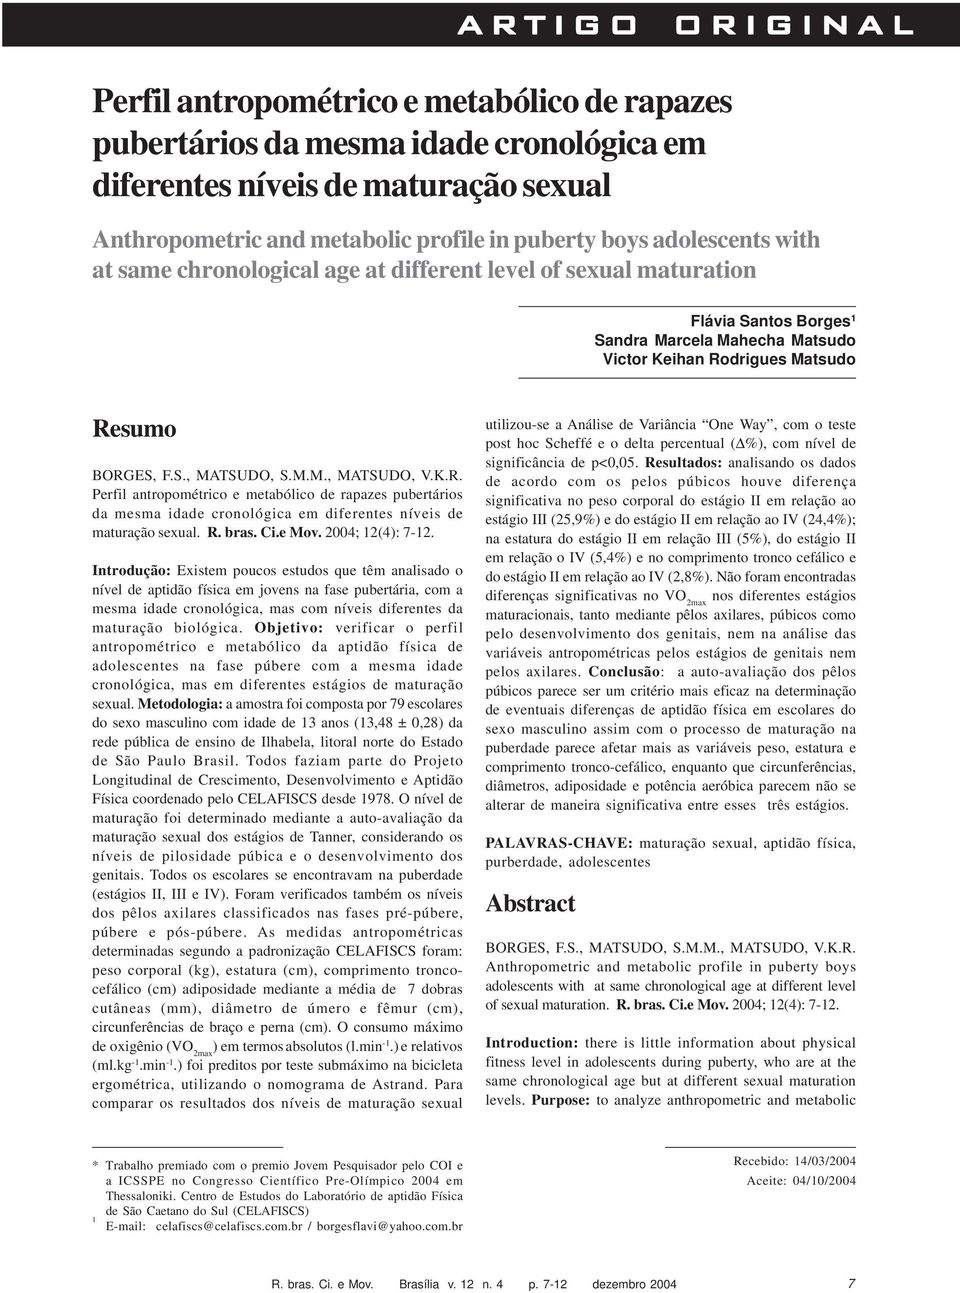 M.M., MATSUDO, V.K.R. Perfil antropométrico e metabólico de rapazes pubertários da mesma idade cronológica em diferentes níveis de maturação sexual. R. bras. Ci.e Mov. 2004; 12(4): 7-12.